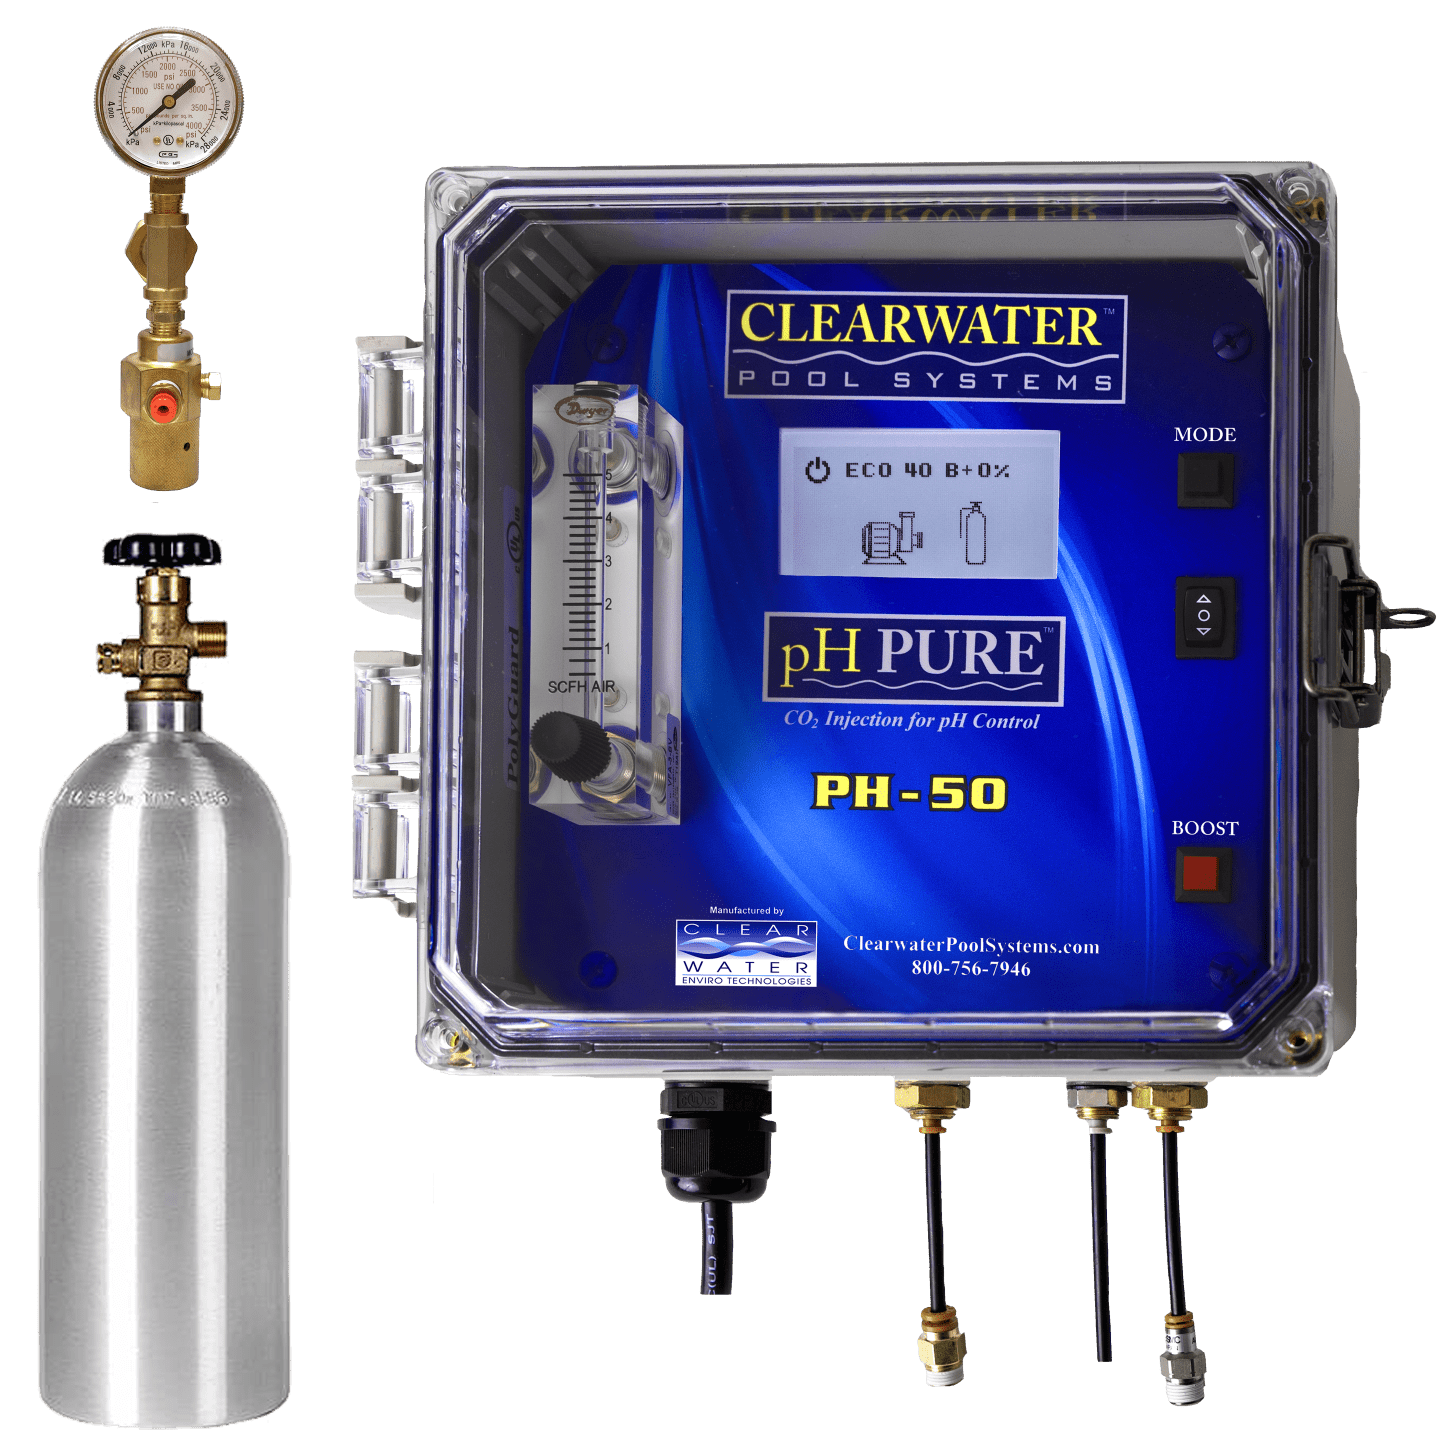 PH-50: regolazione automatica del pH con CO2 - Clearwater Pool Systems - Svizzera